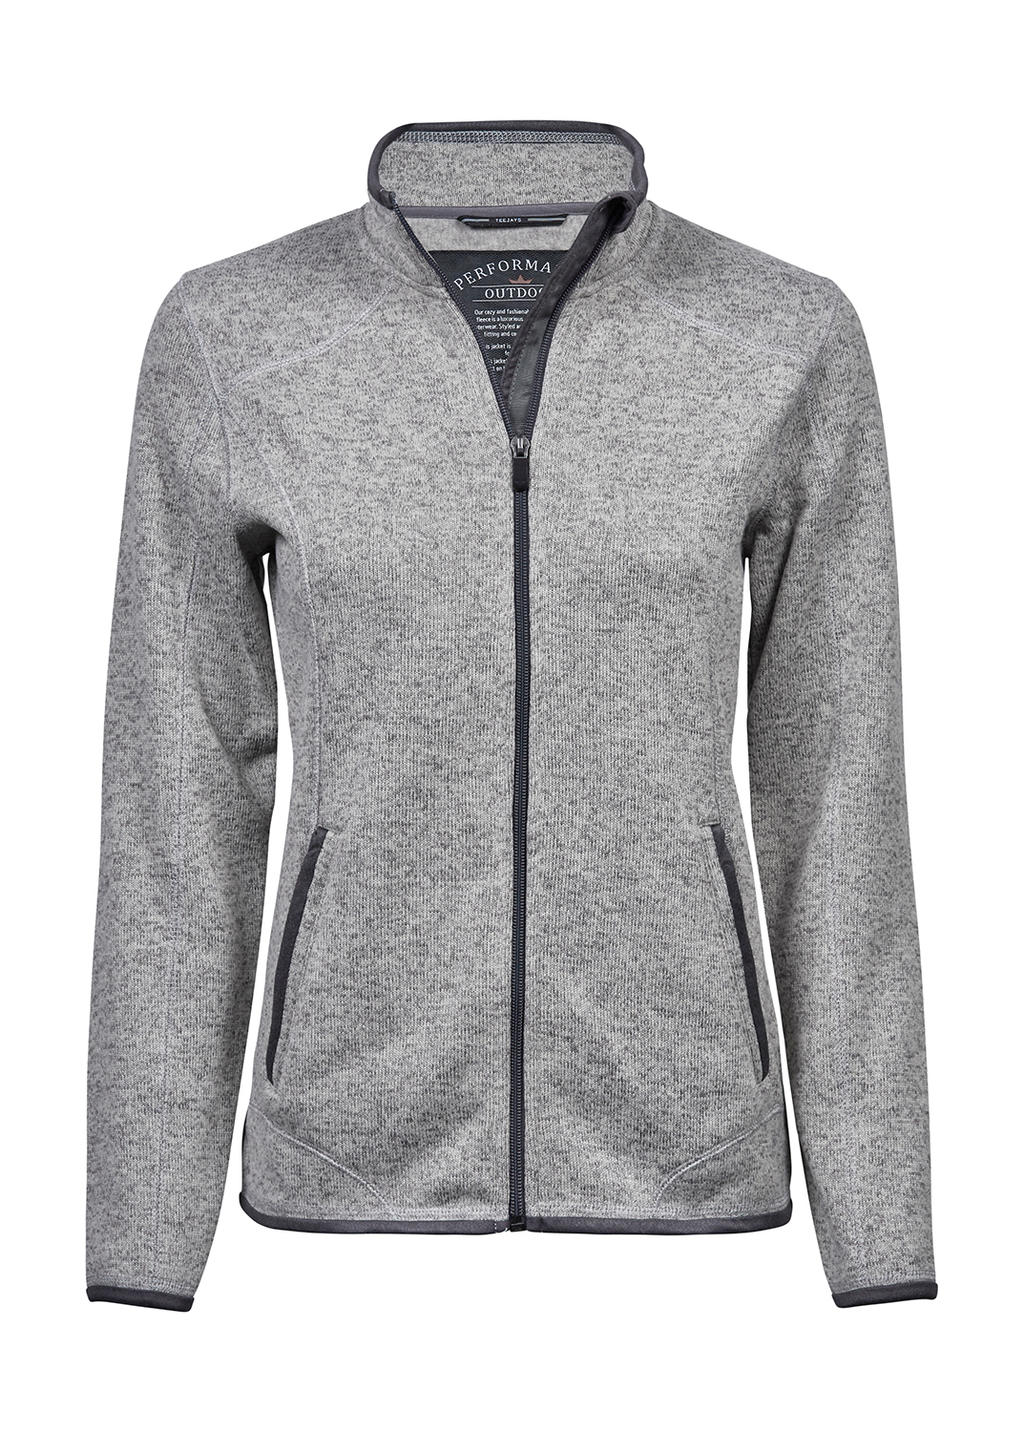  Ladies Outdoor Fleece Jacket in Farbe Grey Melange